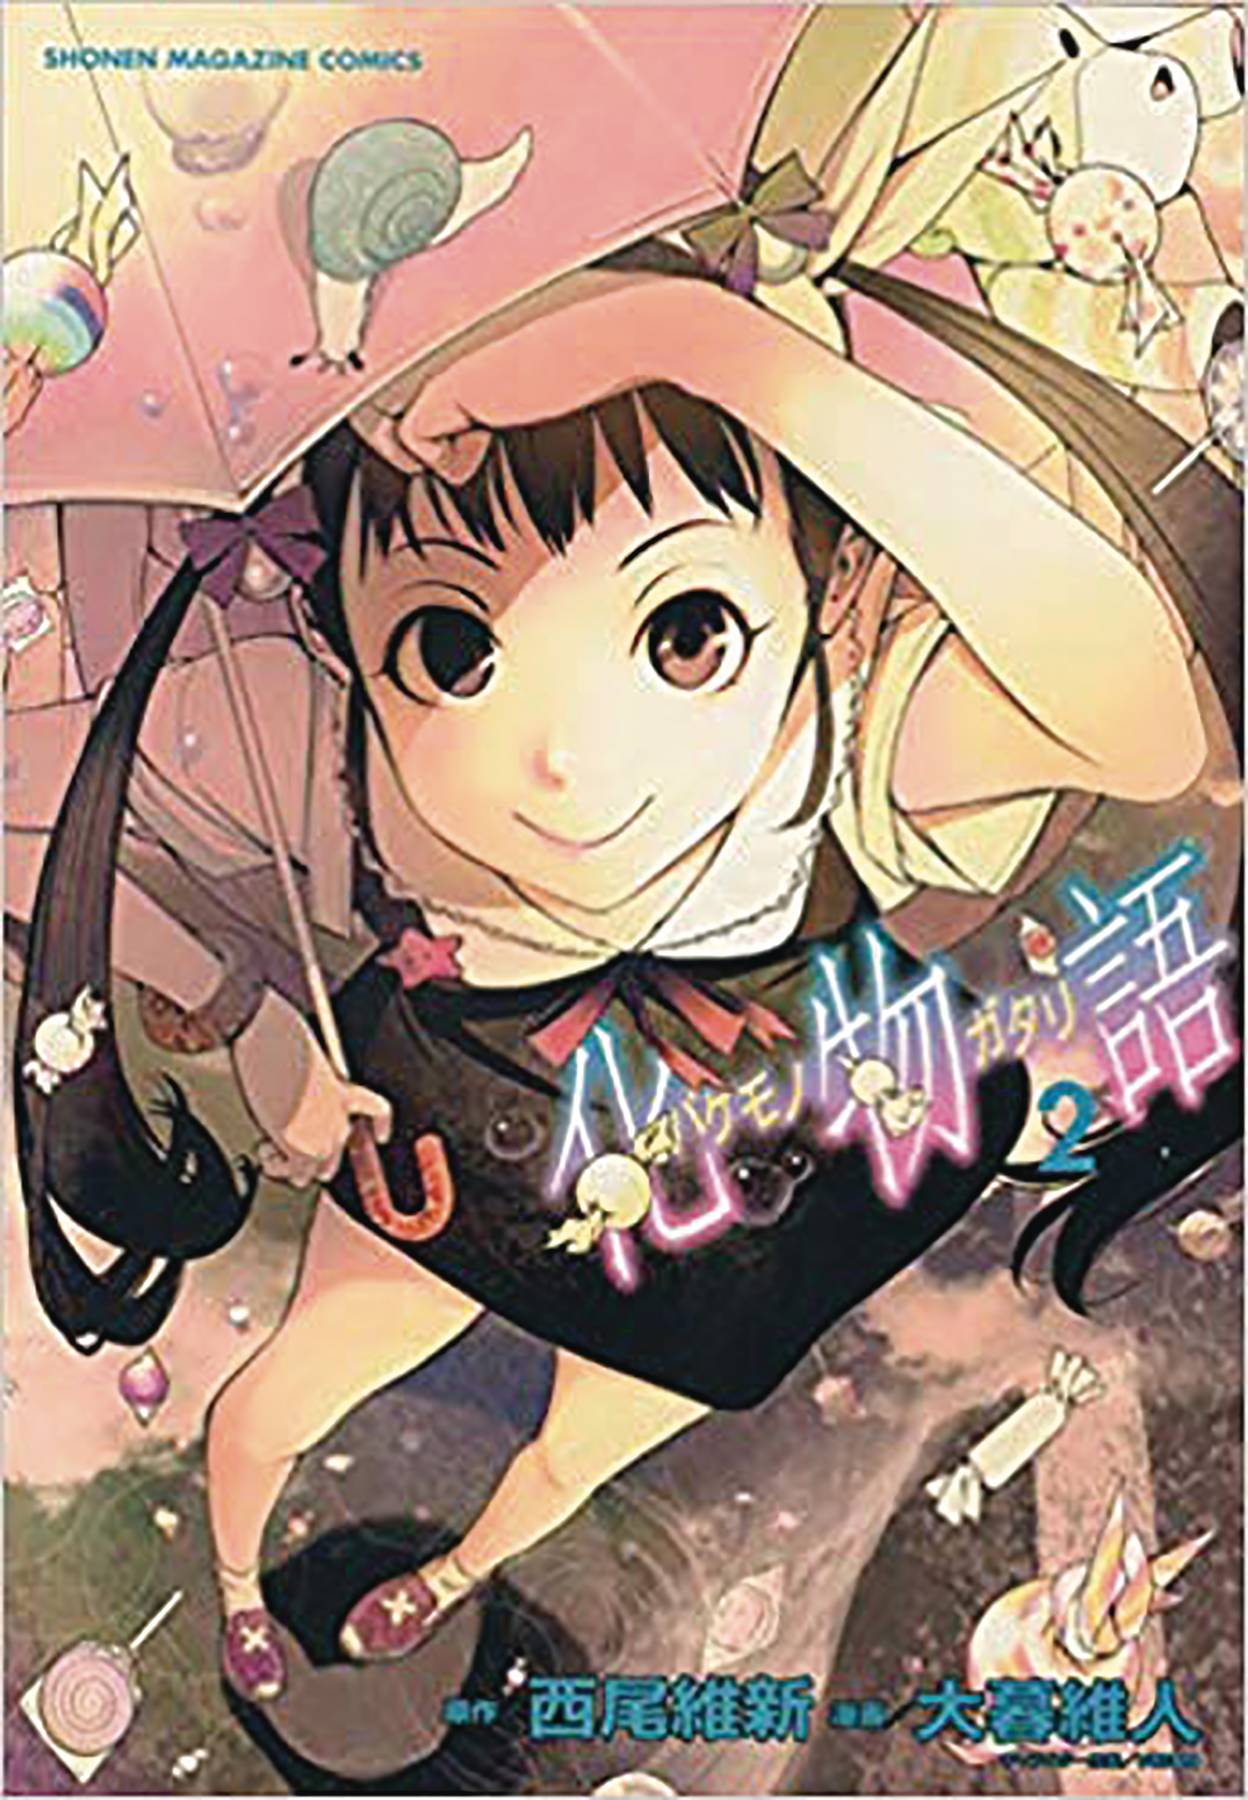 Bakemonogatari Manga Volume 2